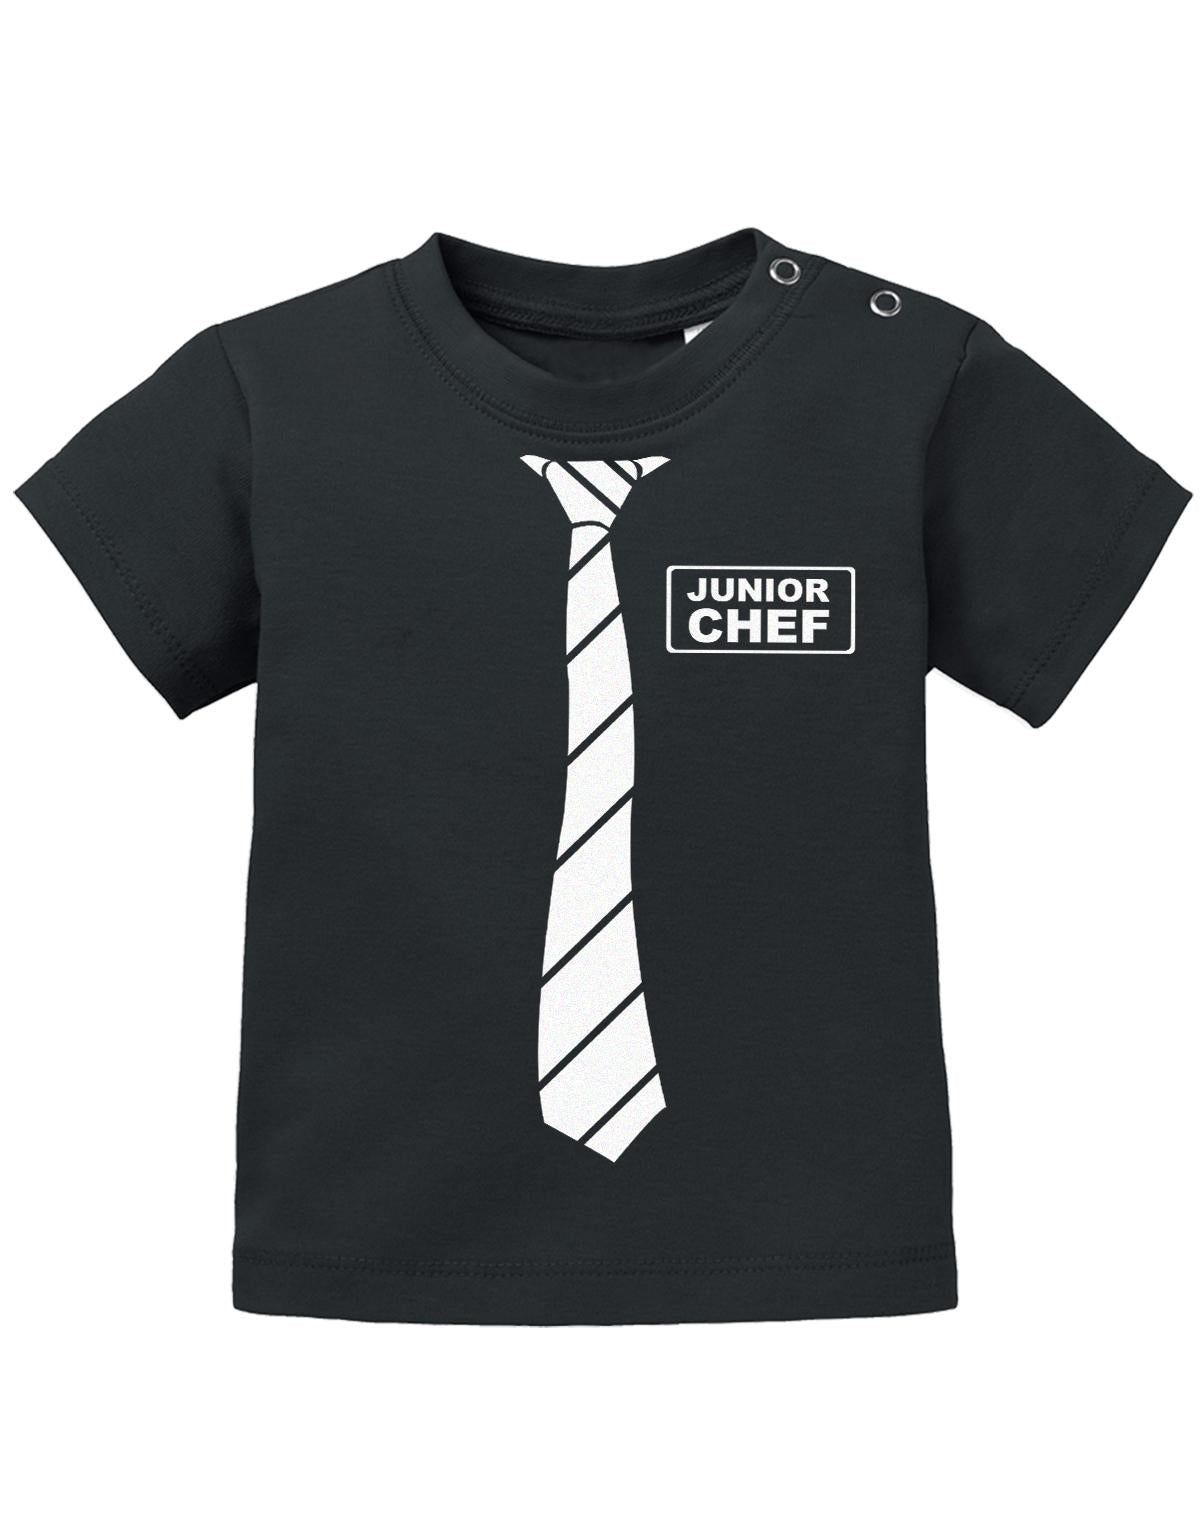 Lustiges Sprüche Baby Shirt Schöne Business Krawatte und Junior Chef Schild. Schwarz